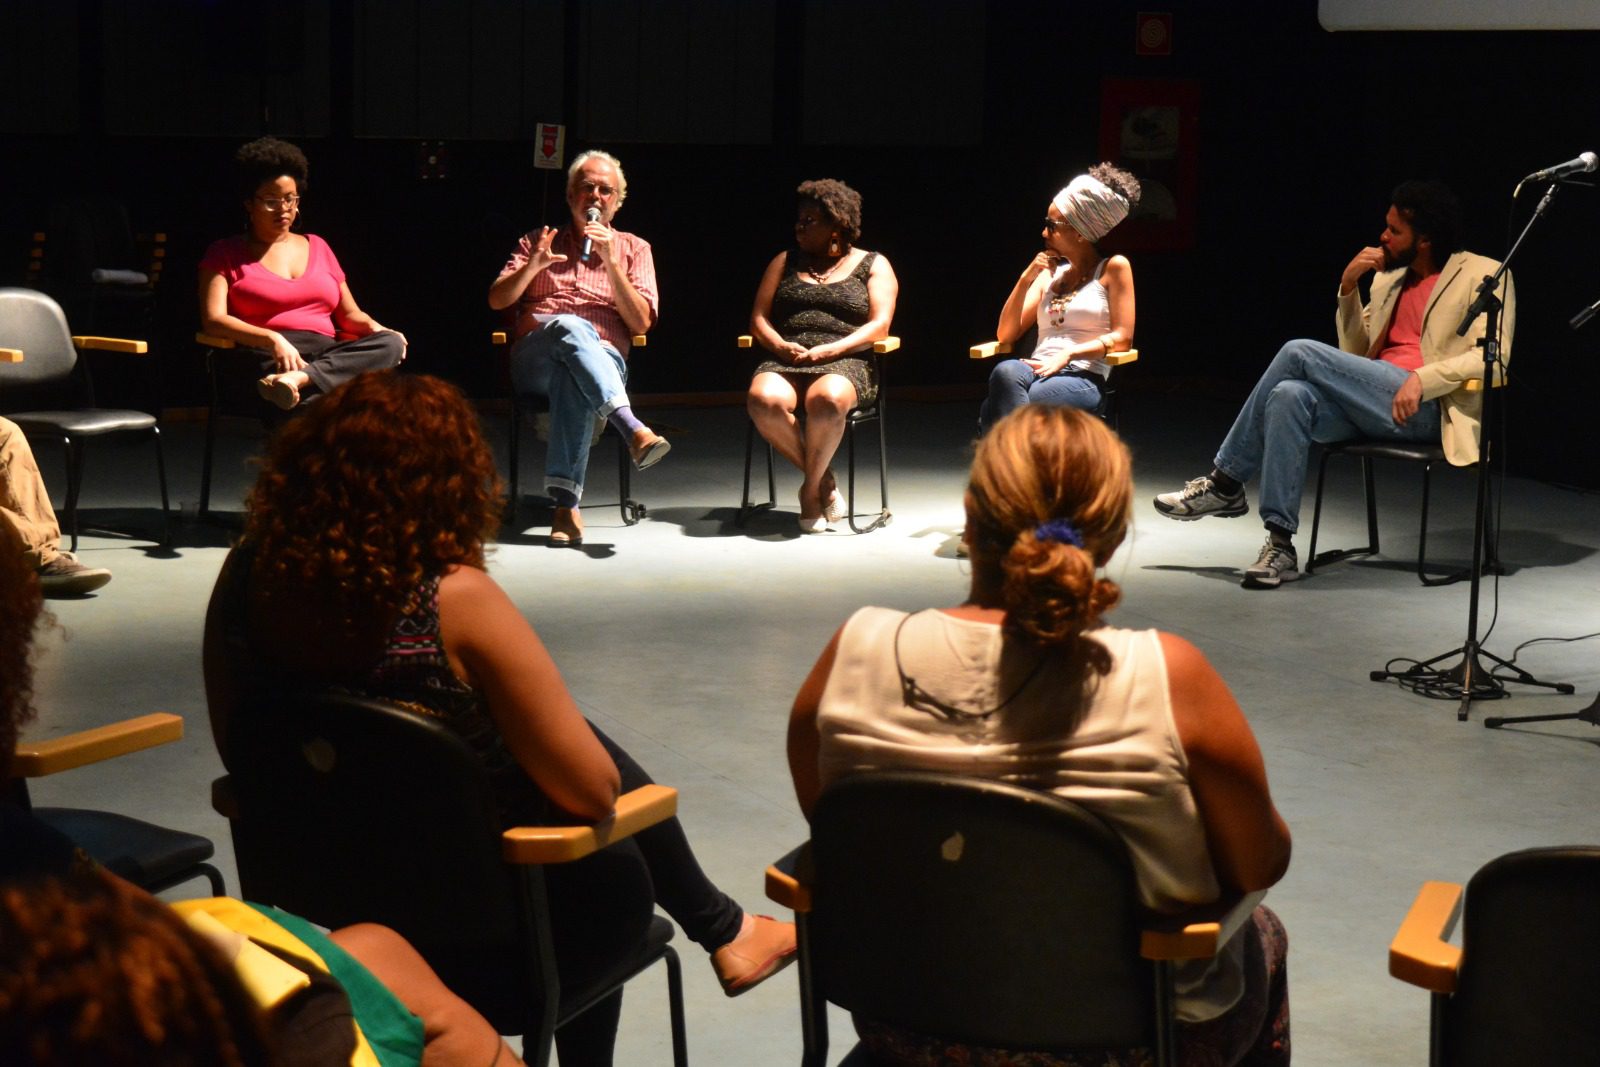 Roda de Conversa reúne coletivos de mulheres na Casa do Cidadão nesta quarta-feira